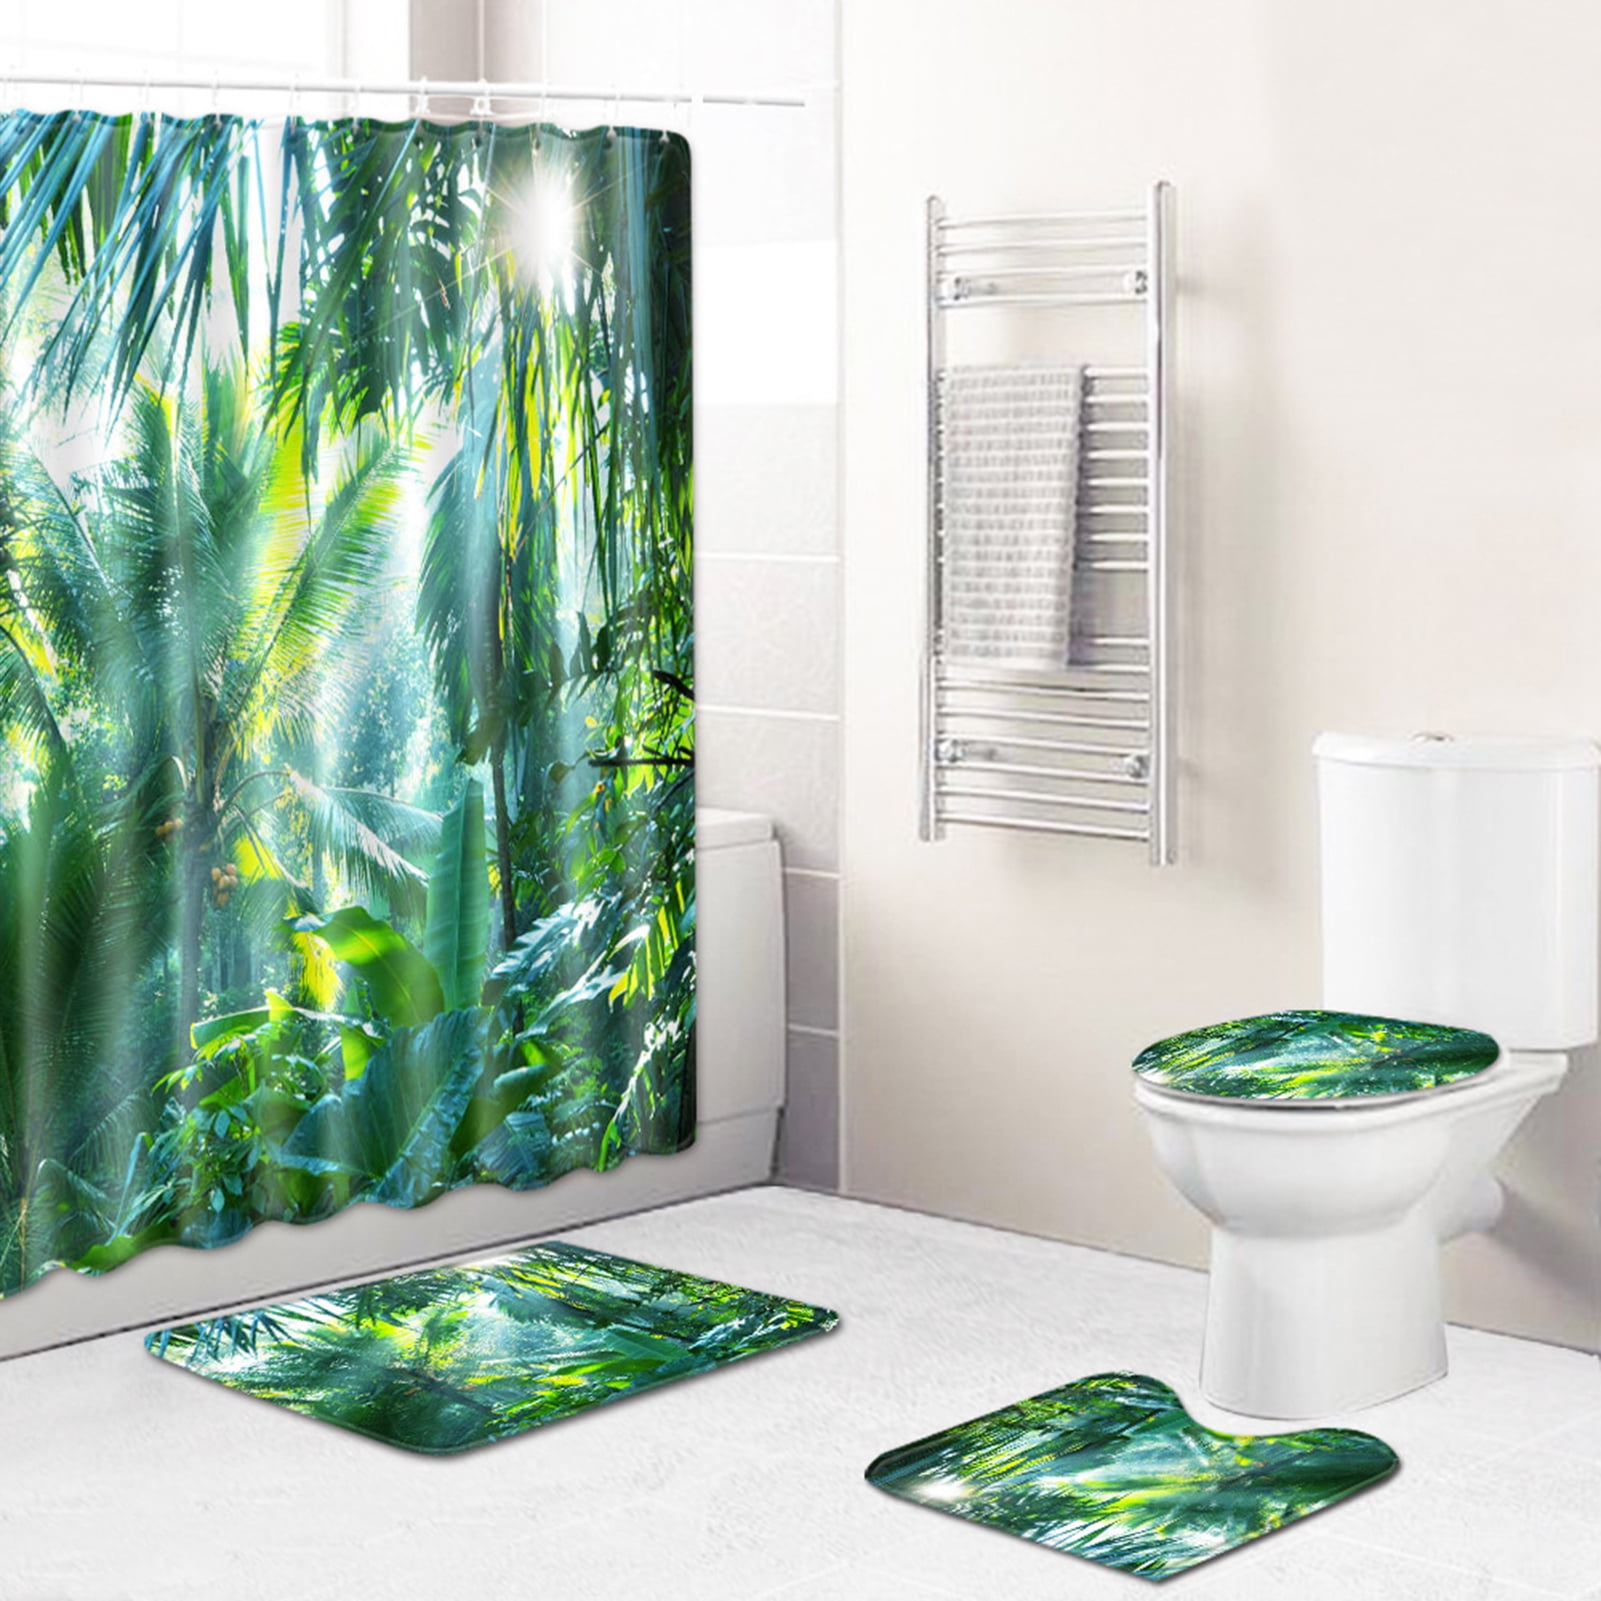 Details about   Shower Curtain 4Pcs/Set Non-Slip Bath Mat Rug Toilet Lid Cover Hotel Home Decor 